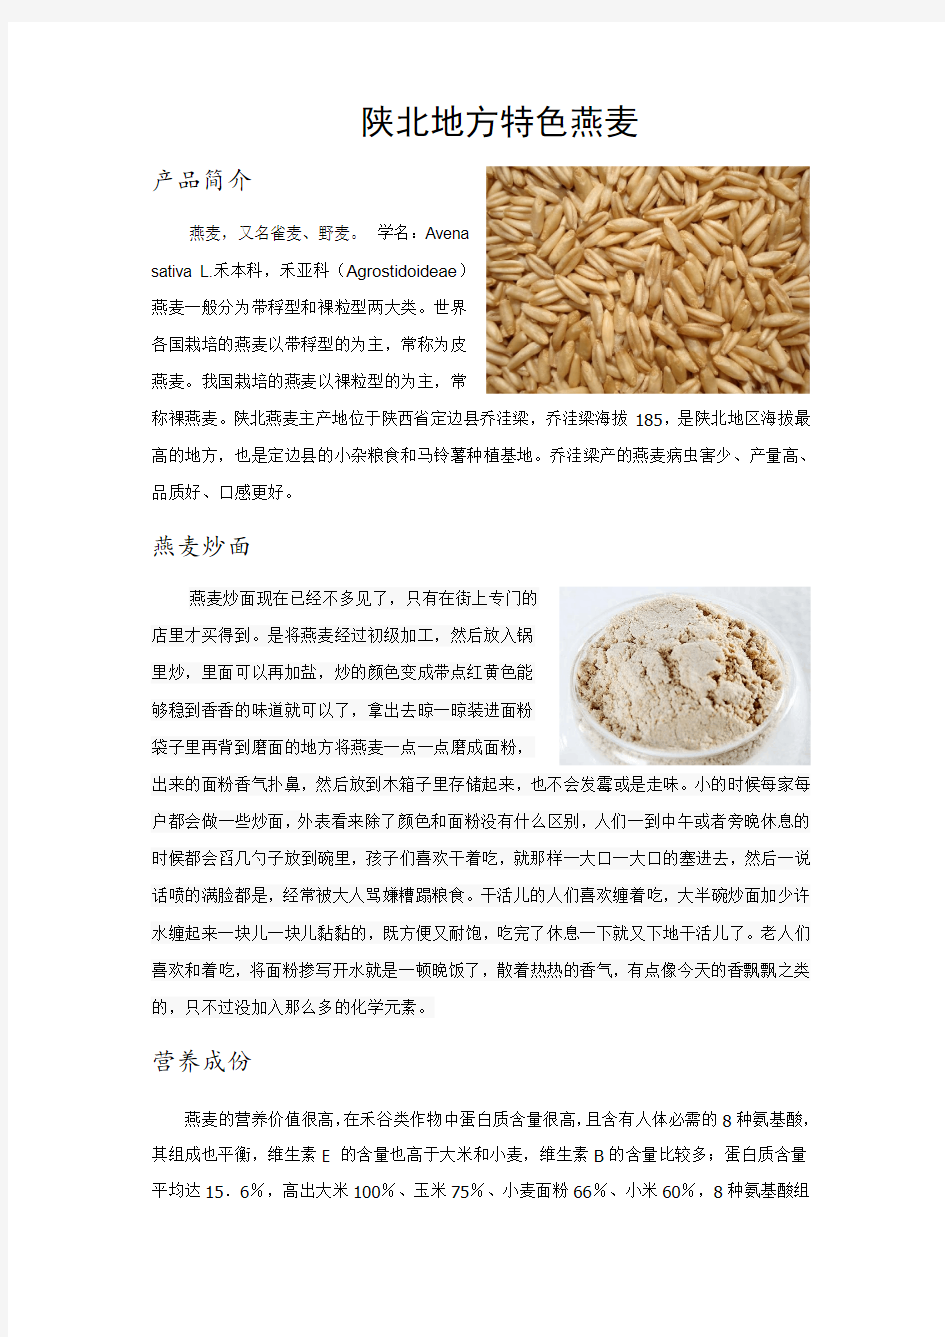 陕北地方特色-燕麦